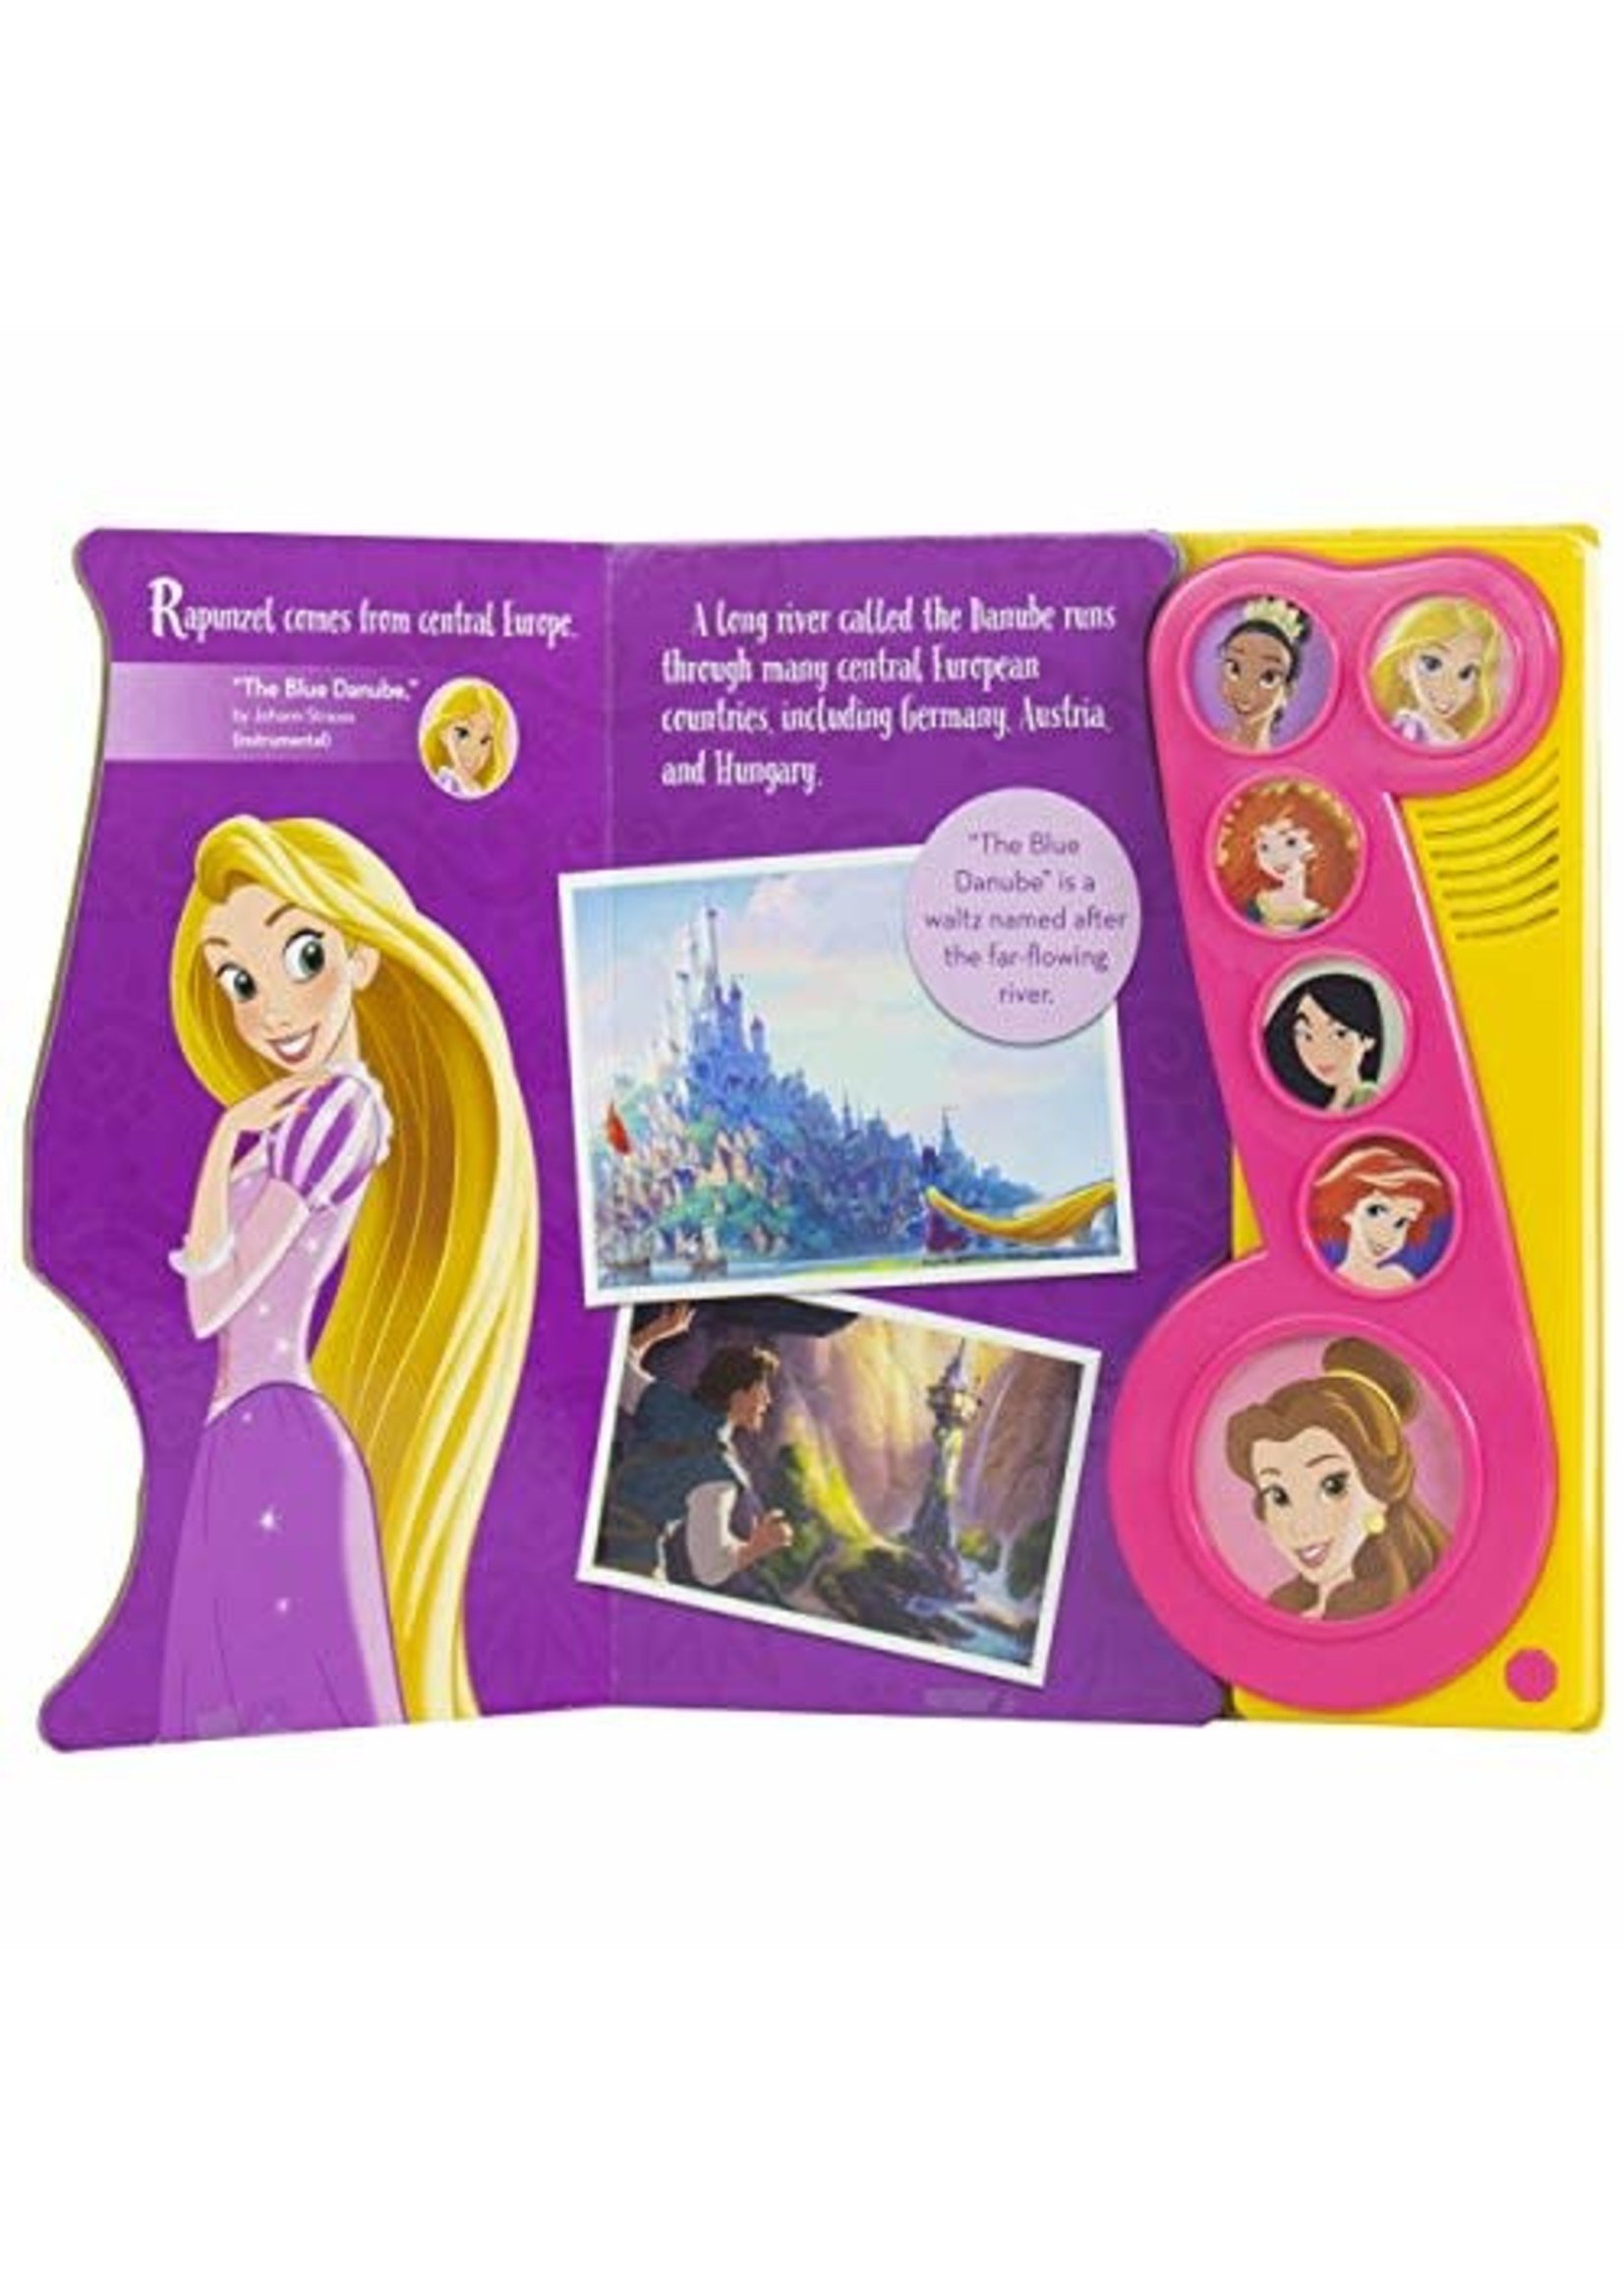 Disney Princess - Princess Songs Around the World Sound Book